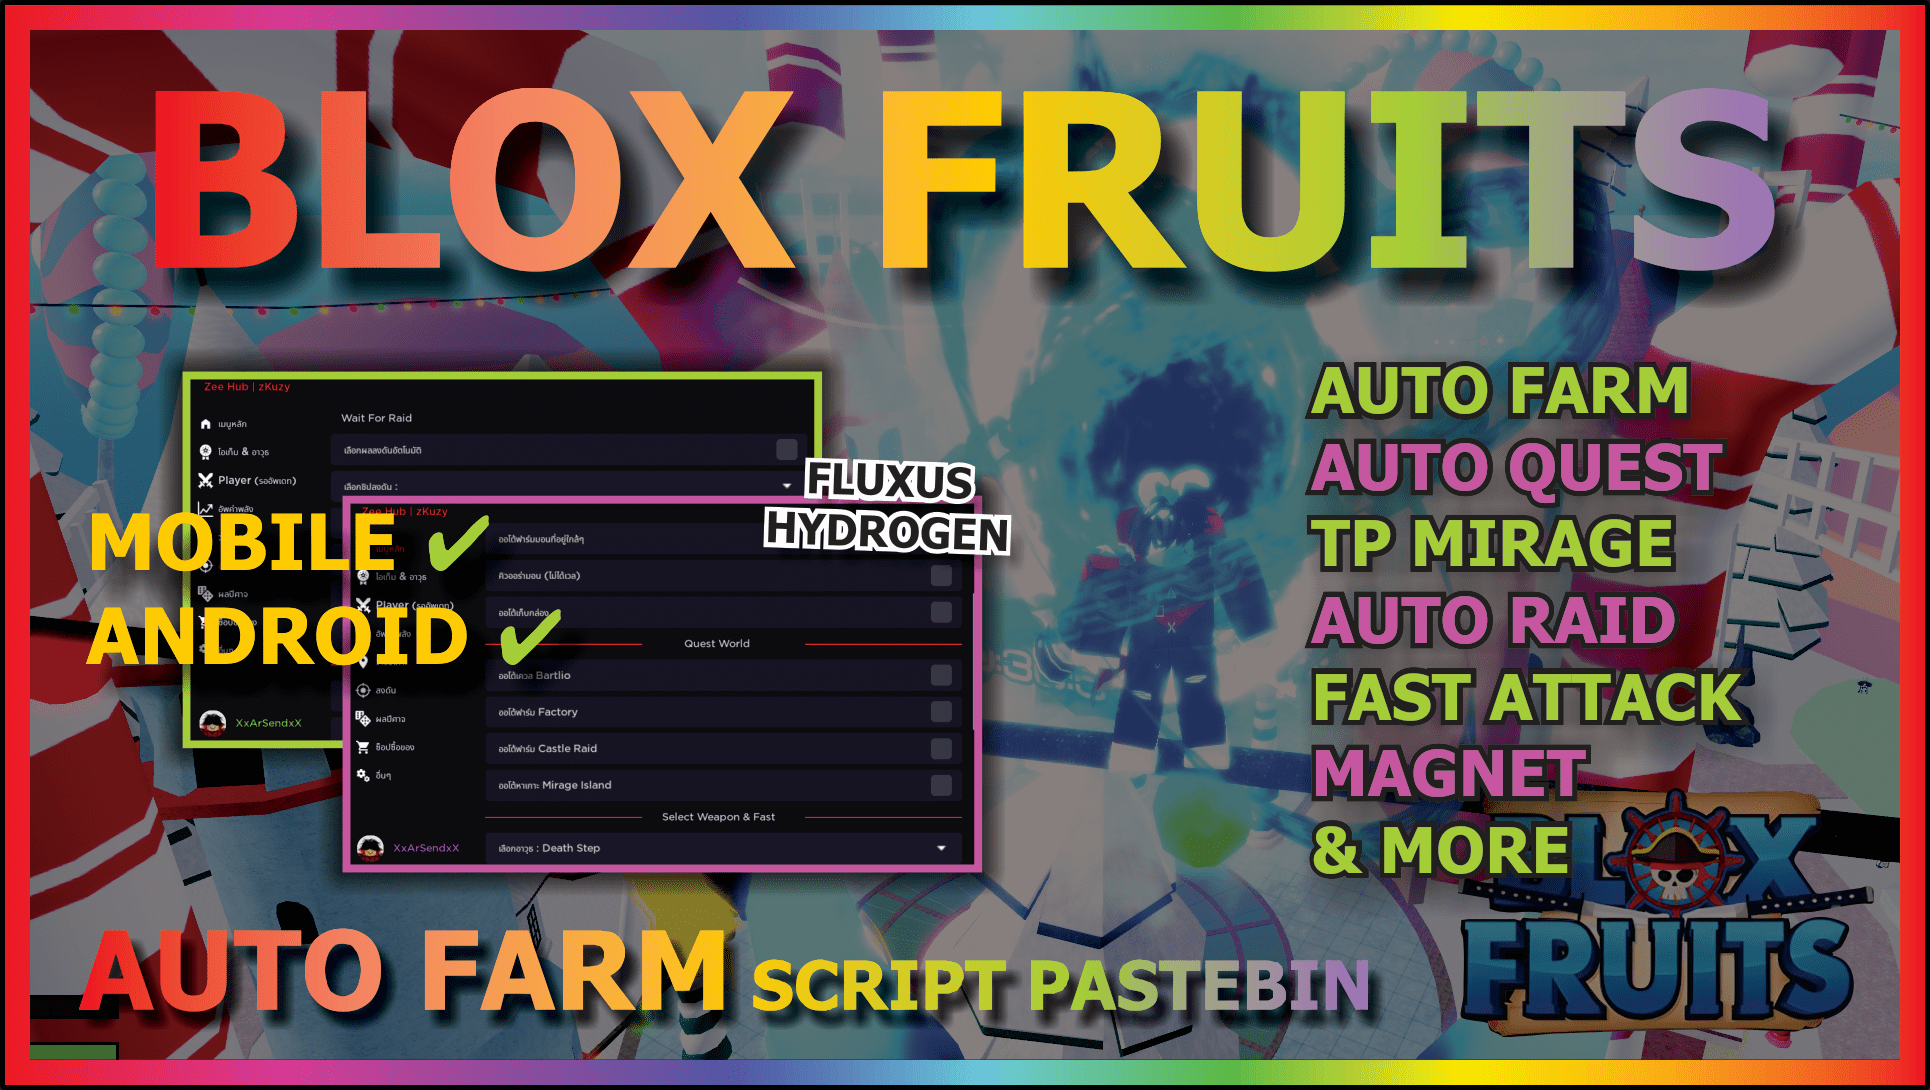 Blox Fruits Race V4 Update Script Roblox 2023 in 2023